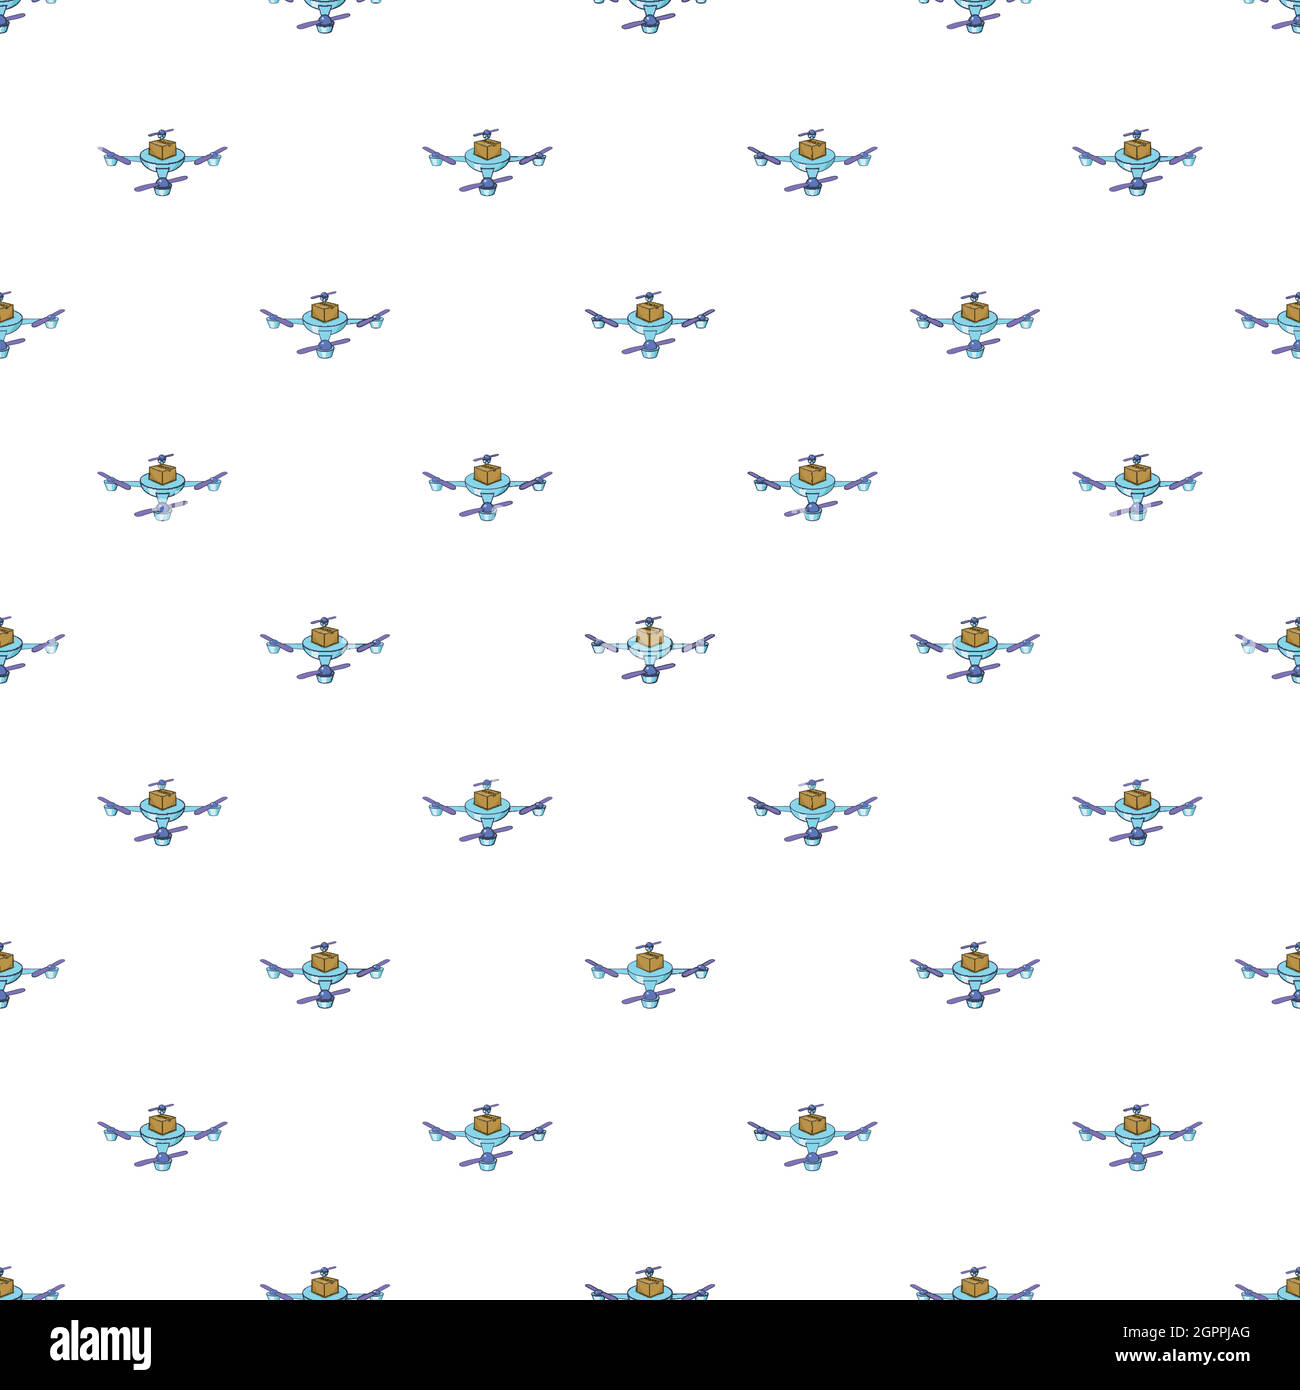 Drone pattern, stile cartoon Illustrazione Vettoriale